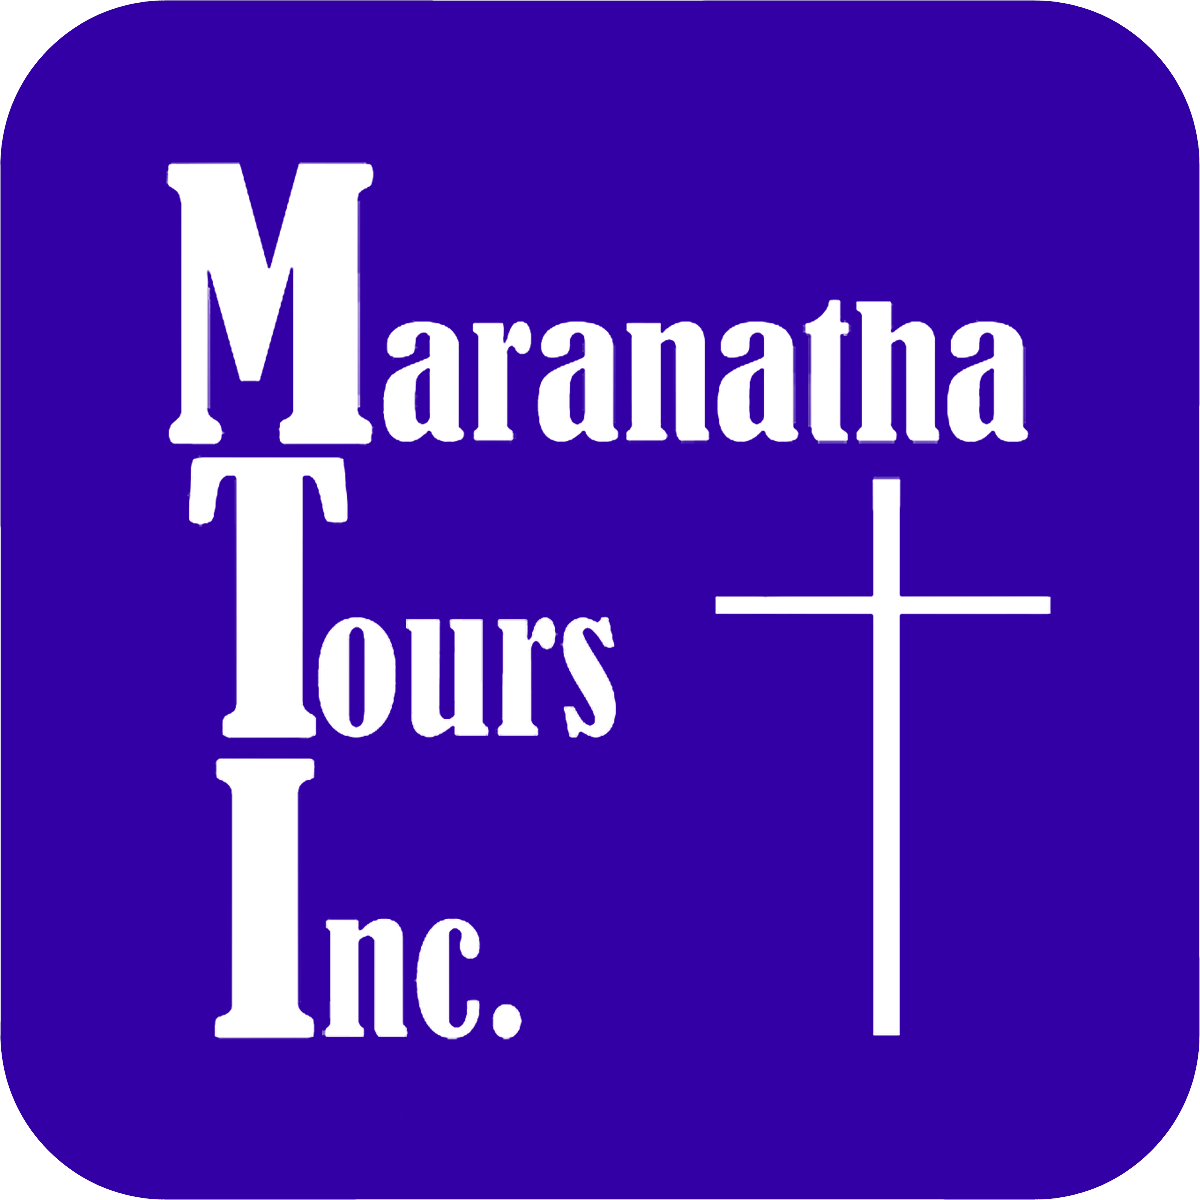 MaranathaTours.com